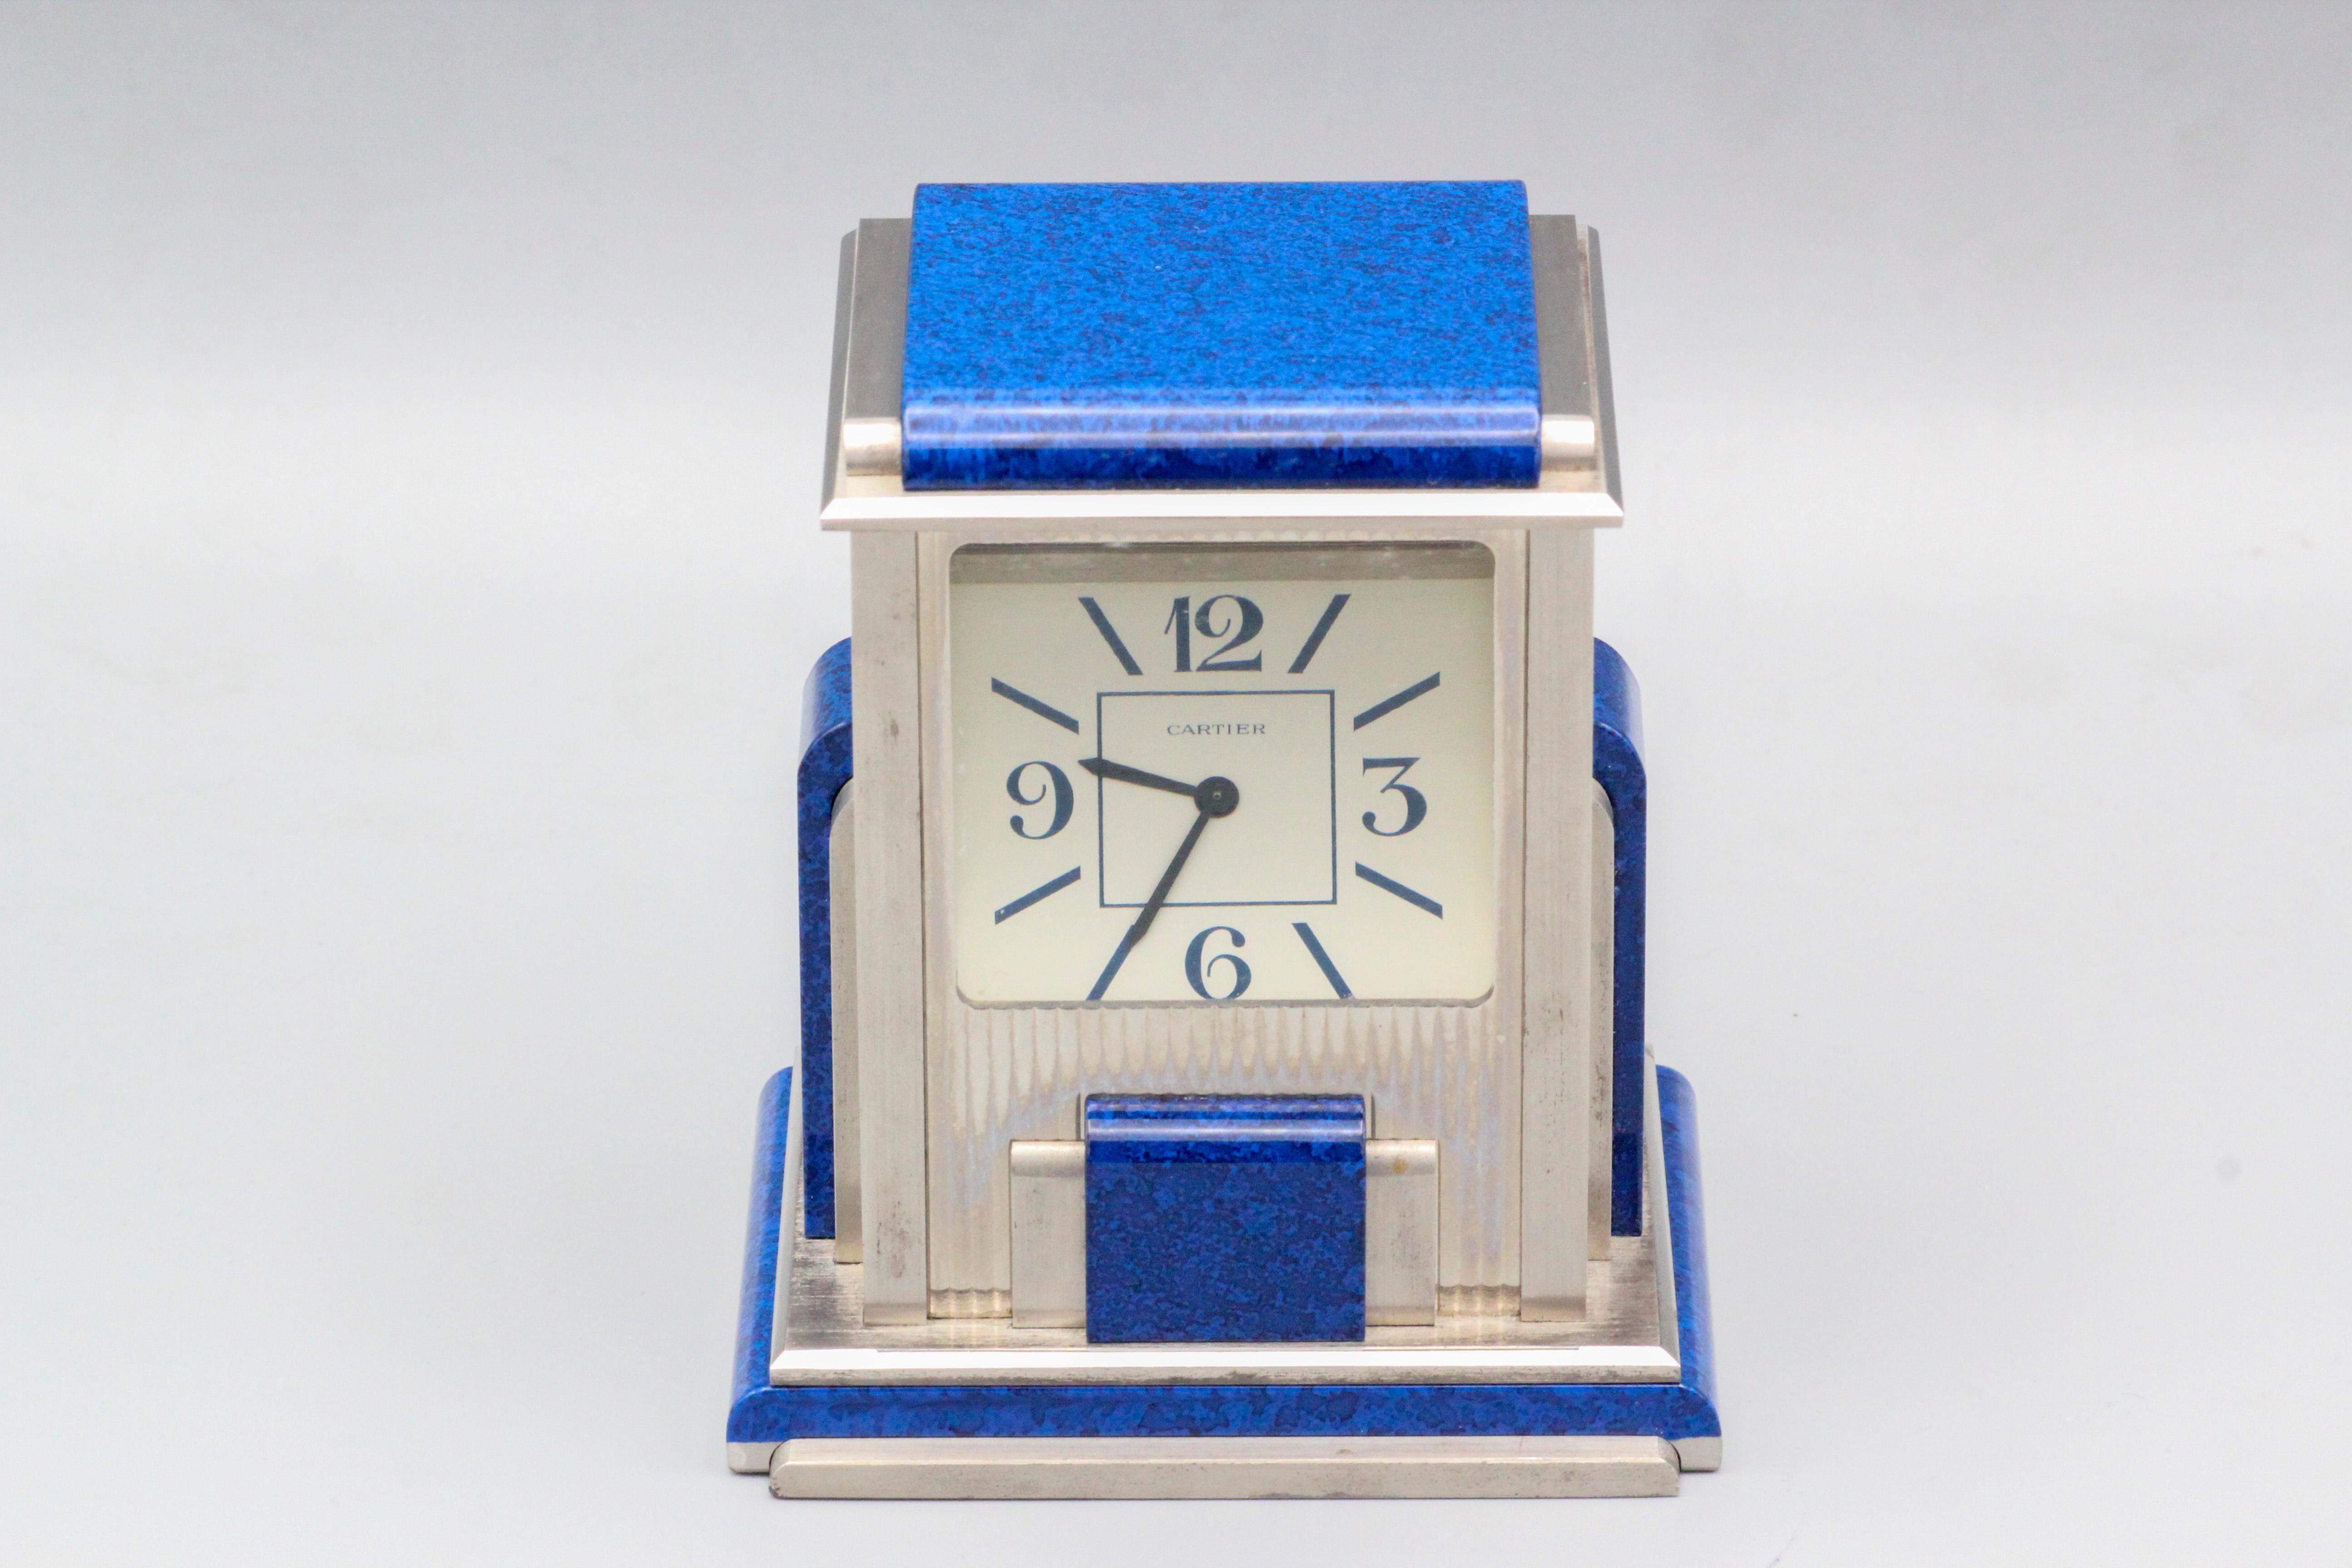 Die Cartier Mystery Prism Desk Clock ist ein Beweis für das Engagement der Marke sowohl für uhrmacherische Spitzenleistungen als auch für künstlerisches Design. Cartier, bekannt für seine luxuriösen Zeitmesser und Schmuckstücke, hat diese Tischuhr